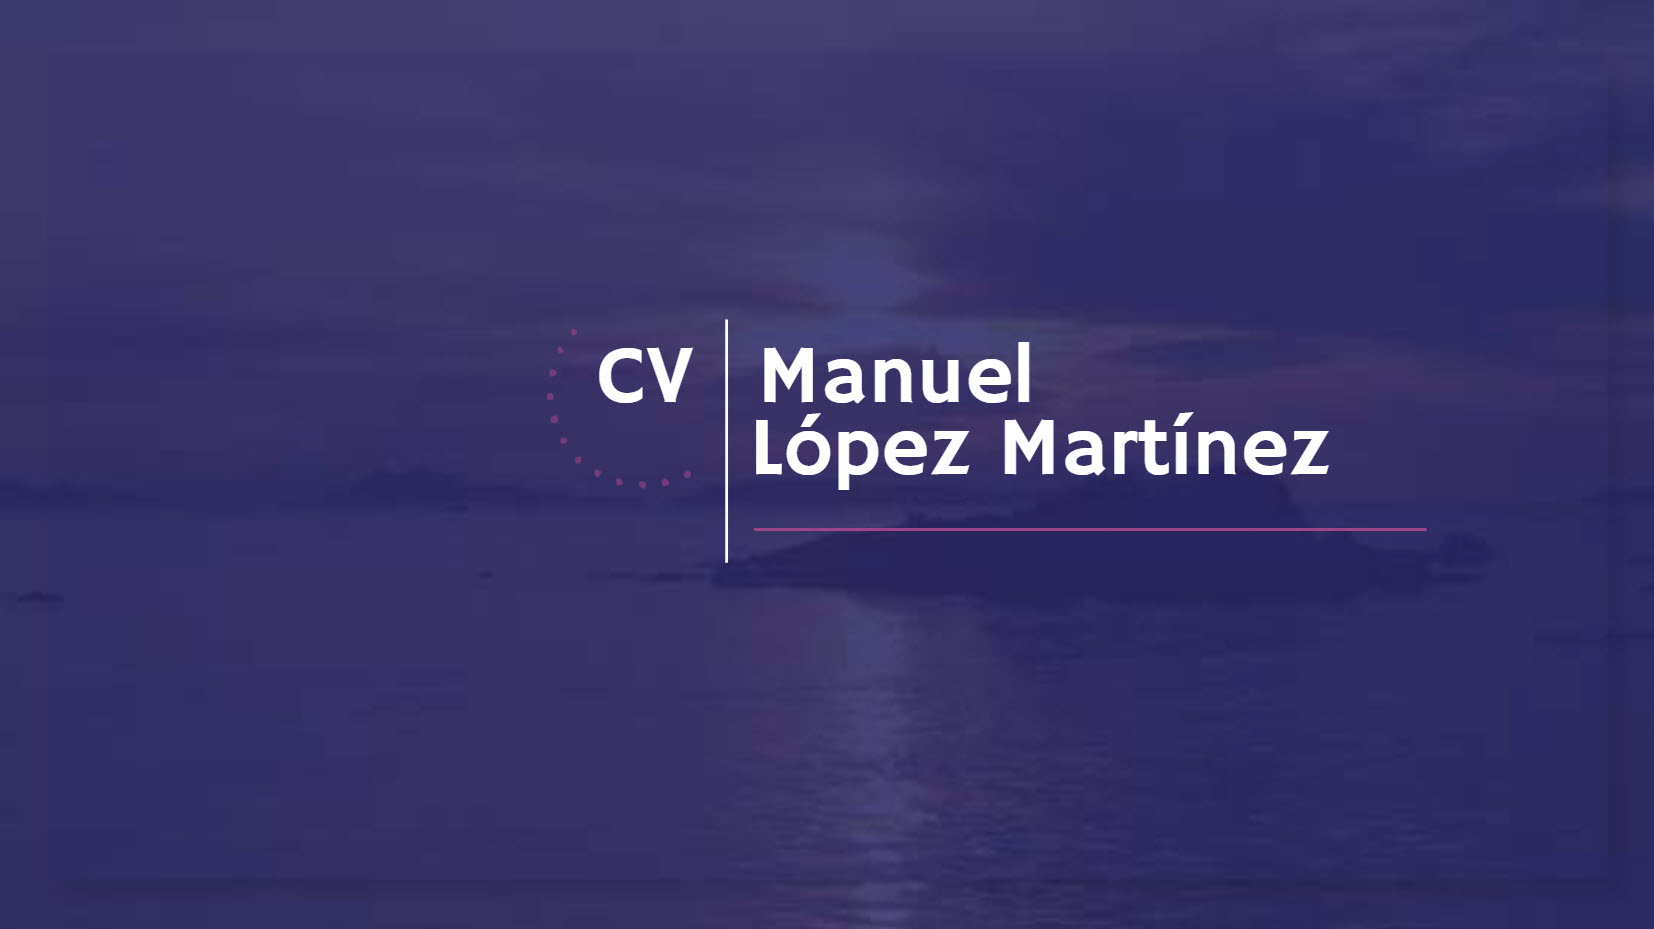 CV Manuel López Martínez